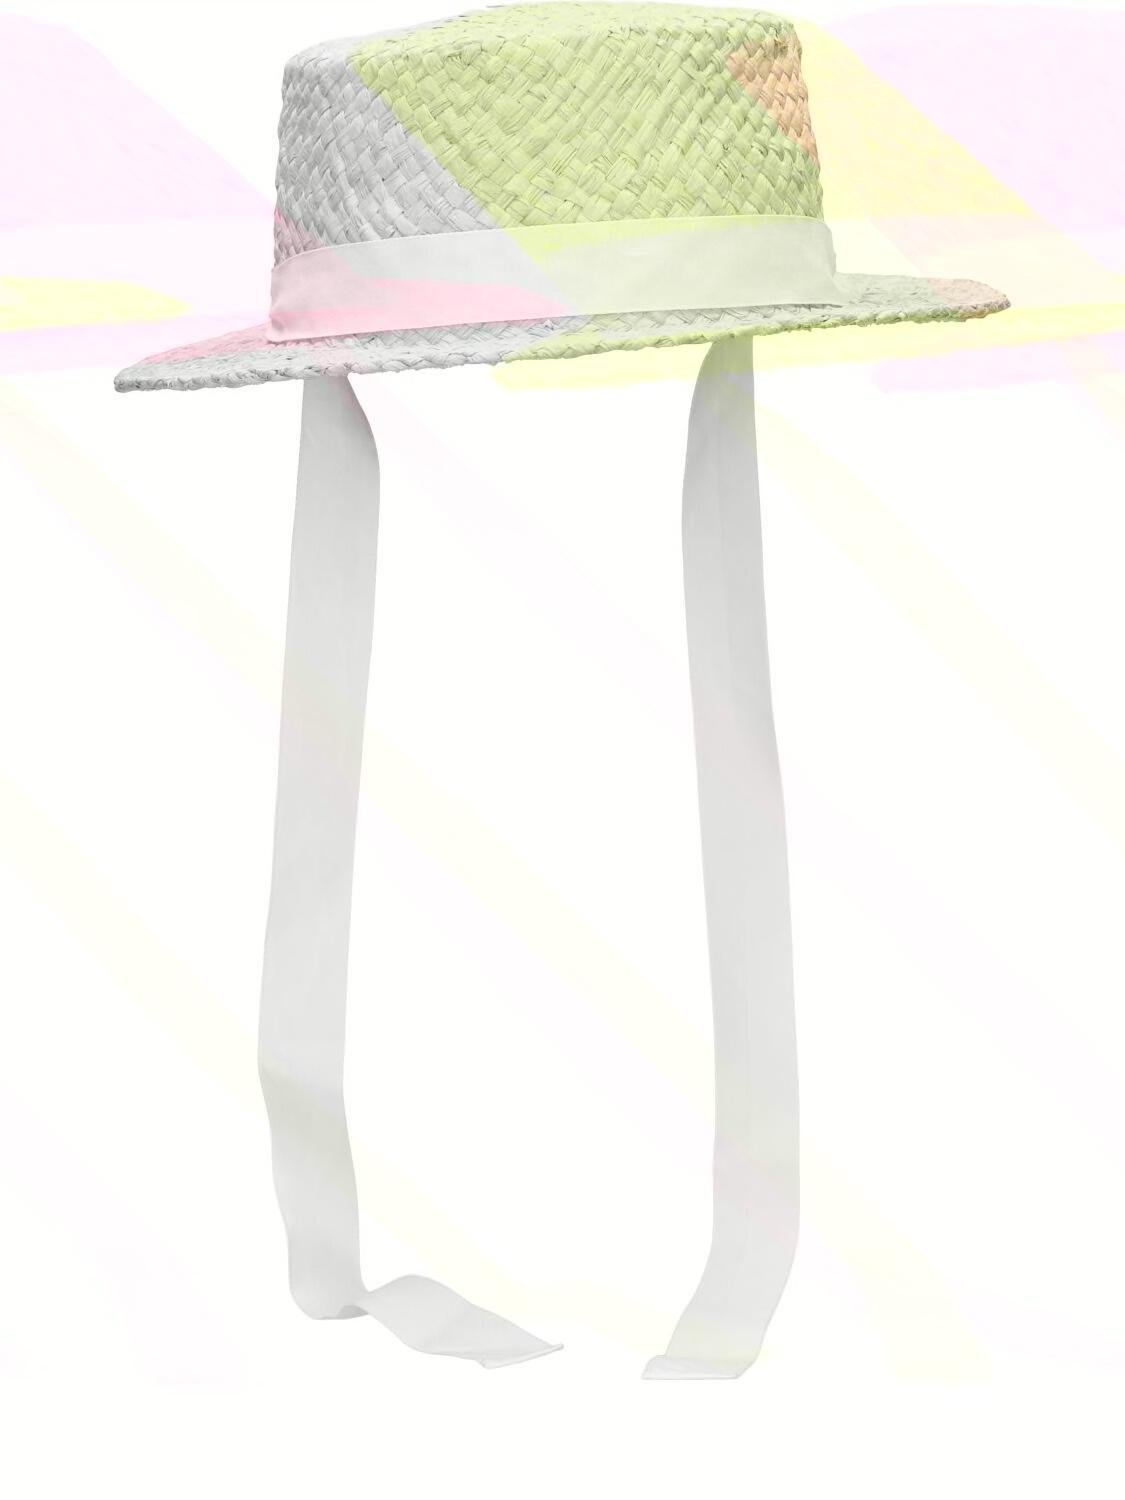 Rafia Bucket Hat W/ Straps by BONPOINT